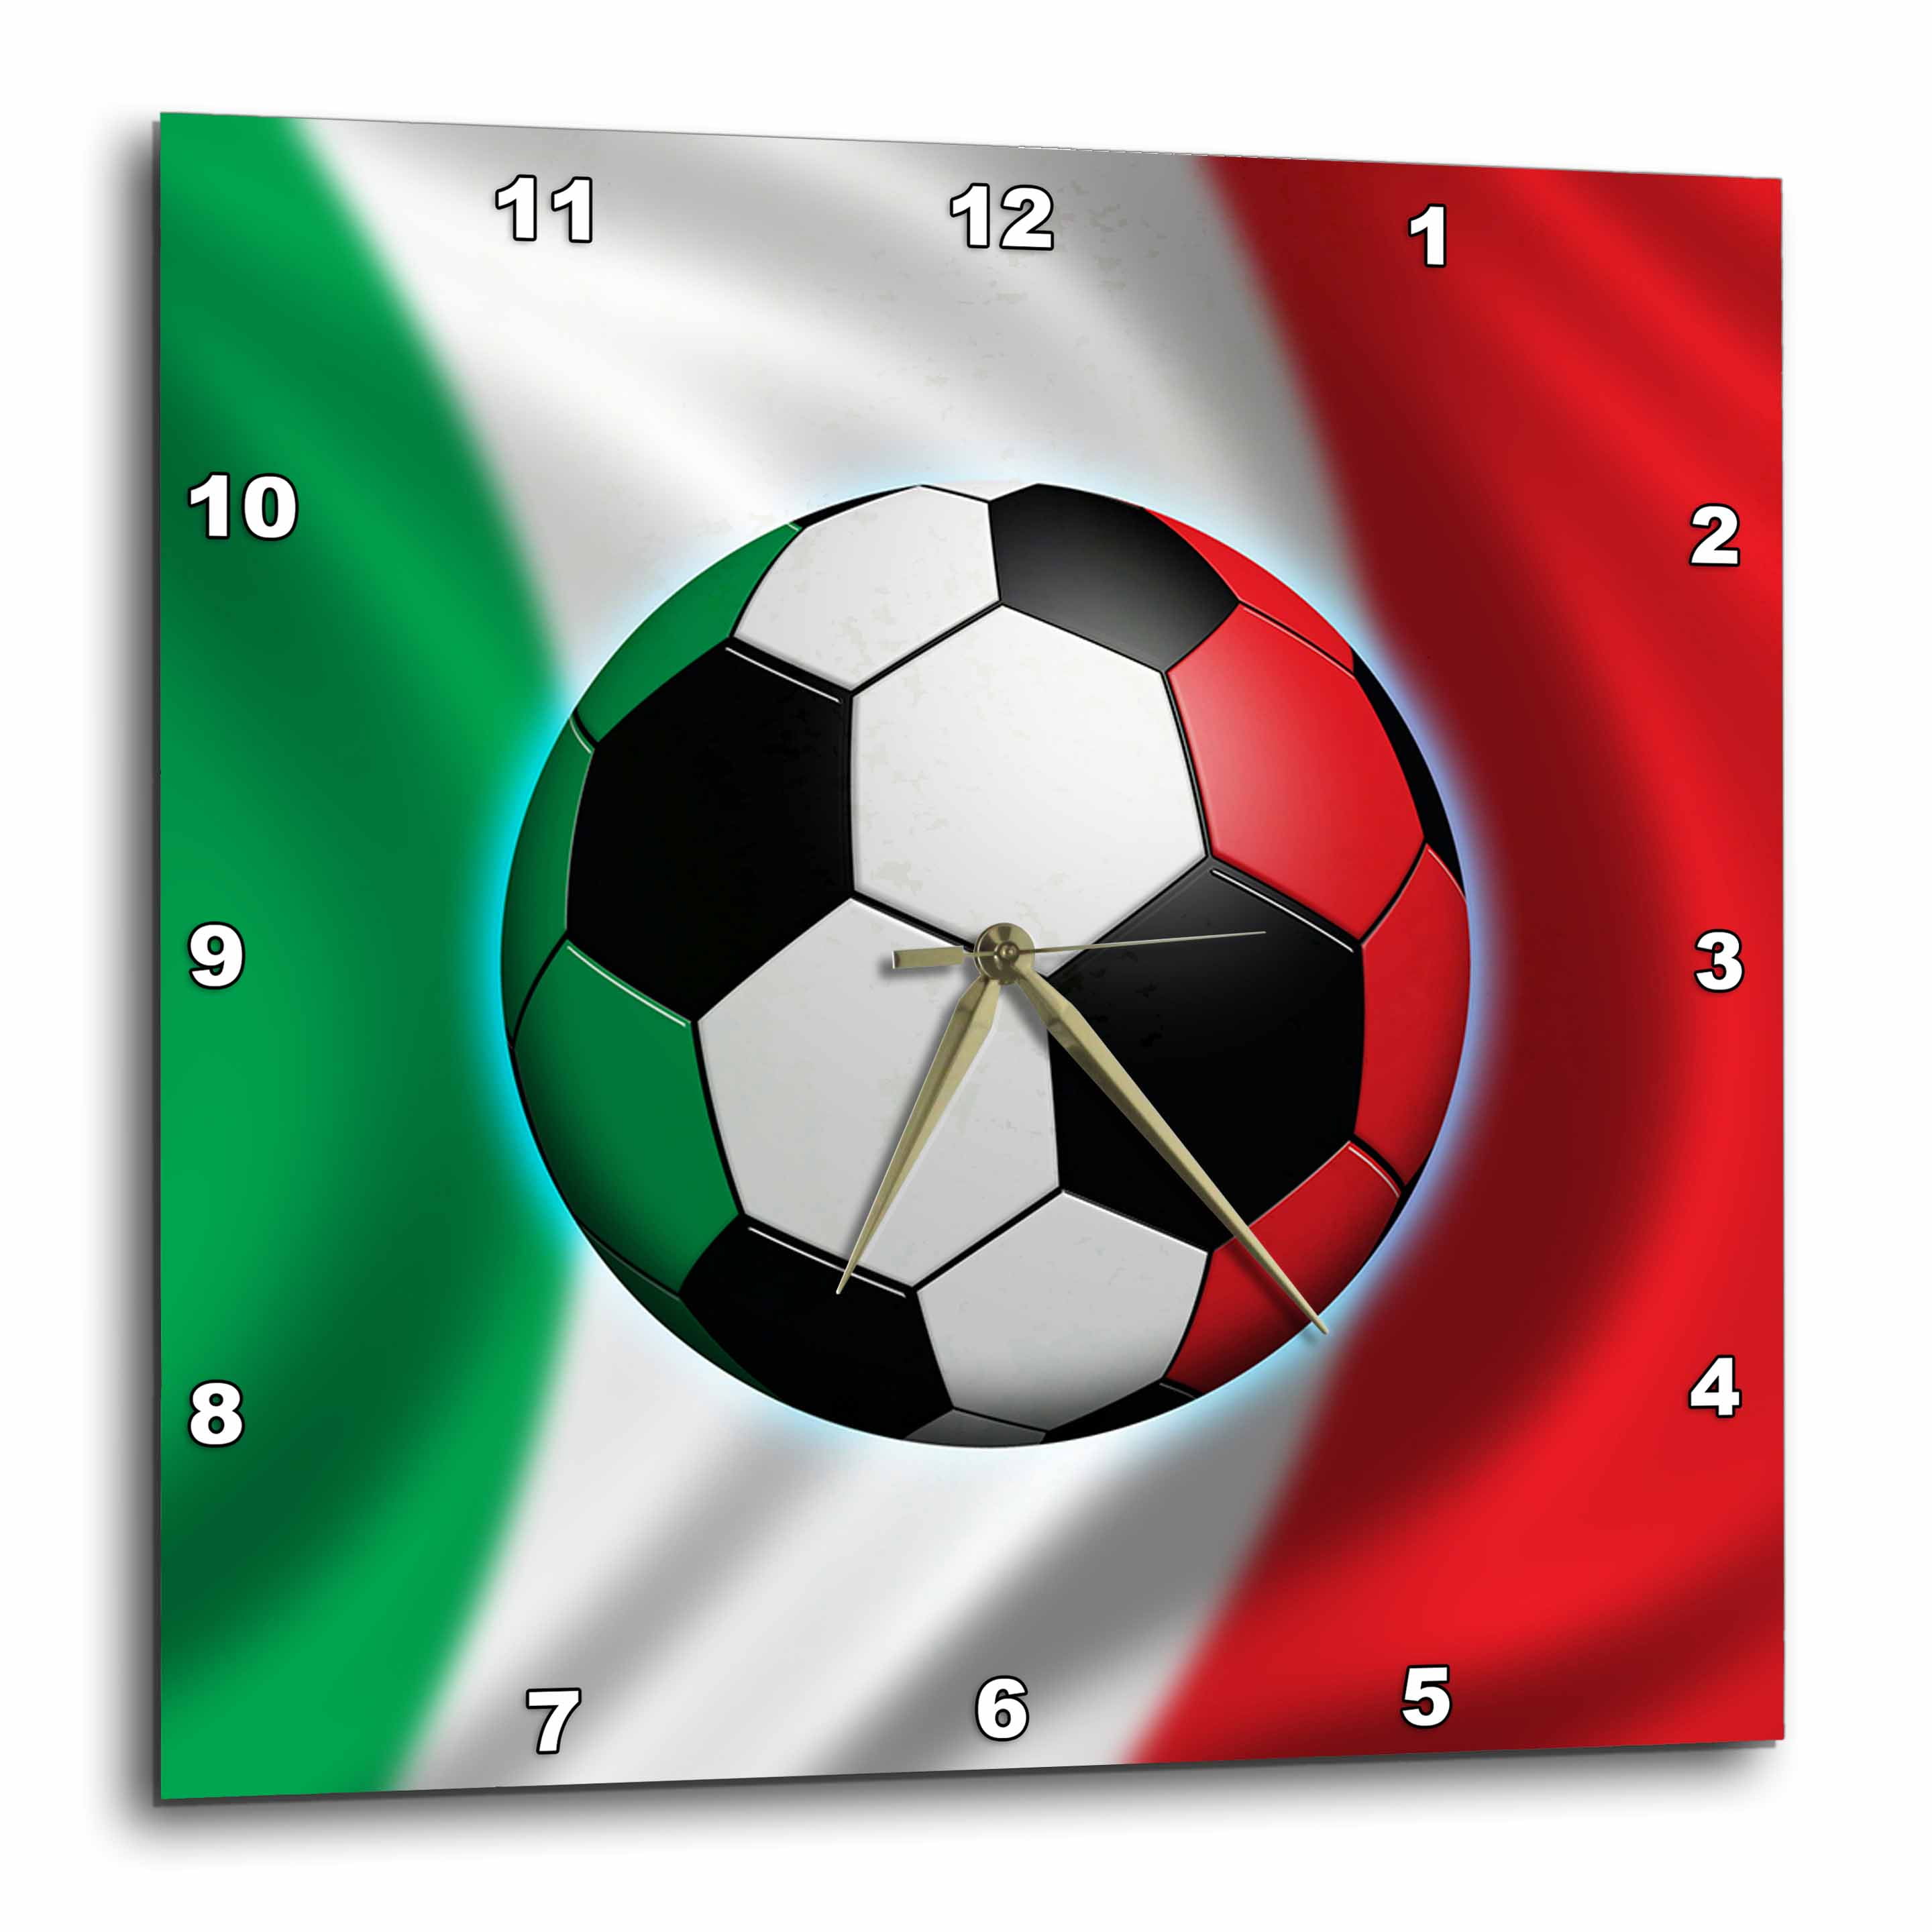 ITALIA SOCCER BALL  ITALY ITALIAN SIZE 5 Foot ball 